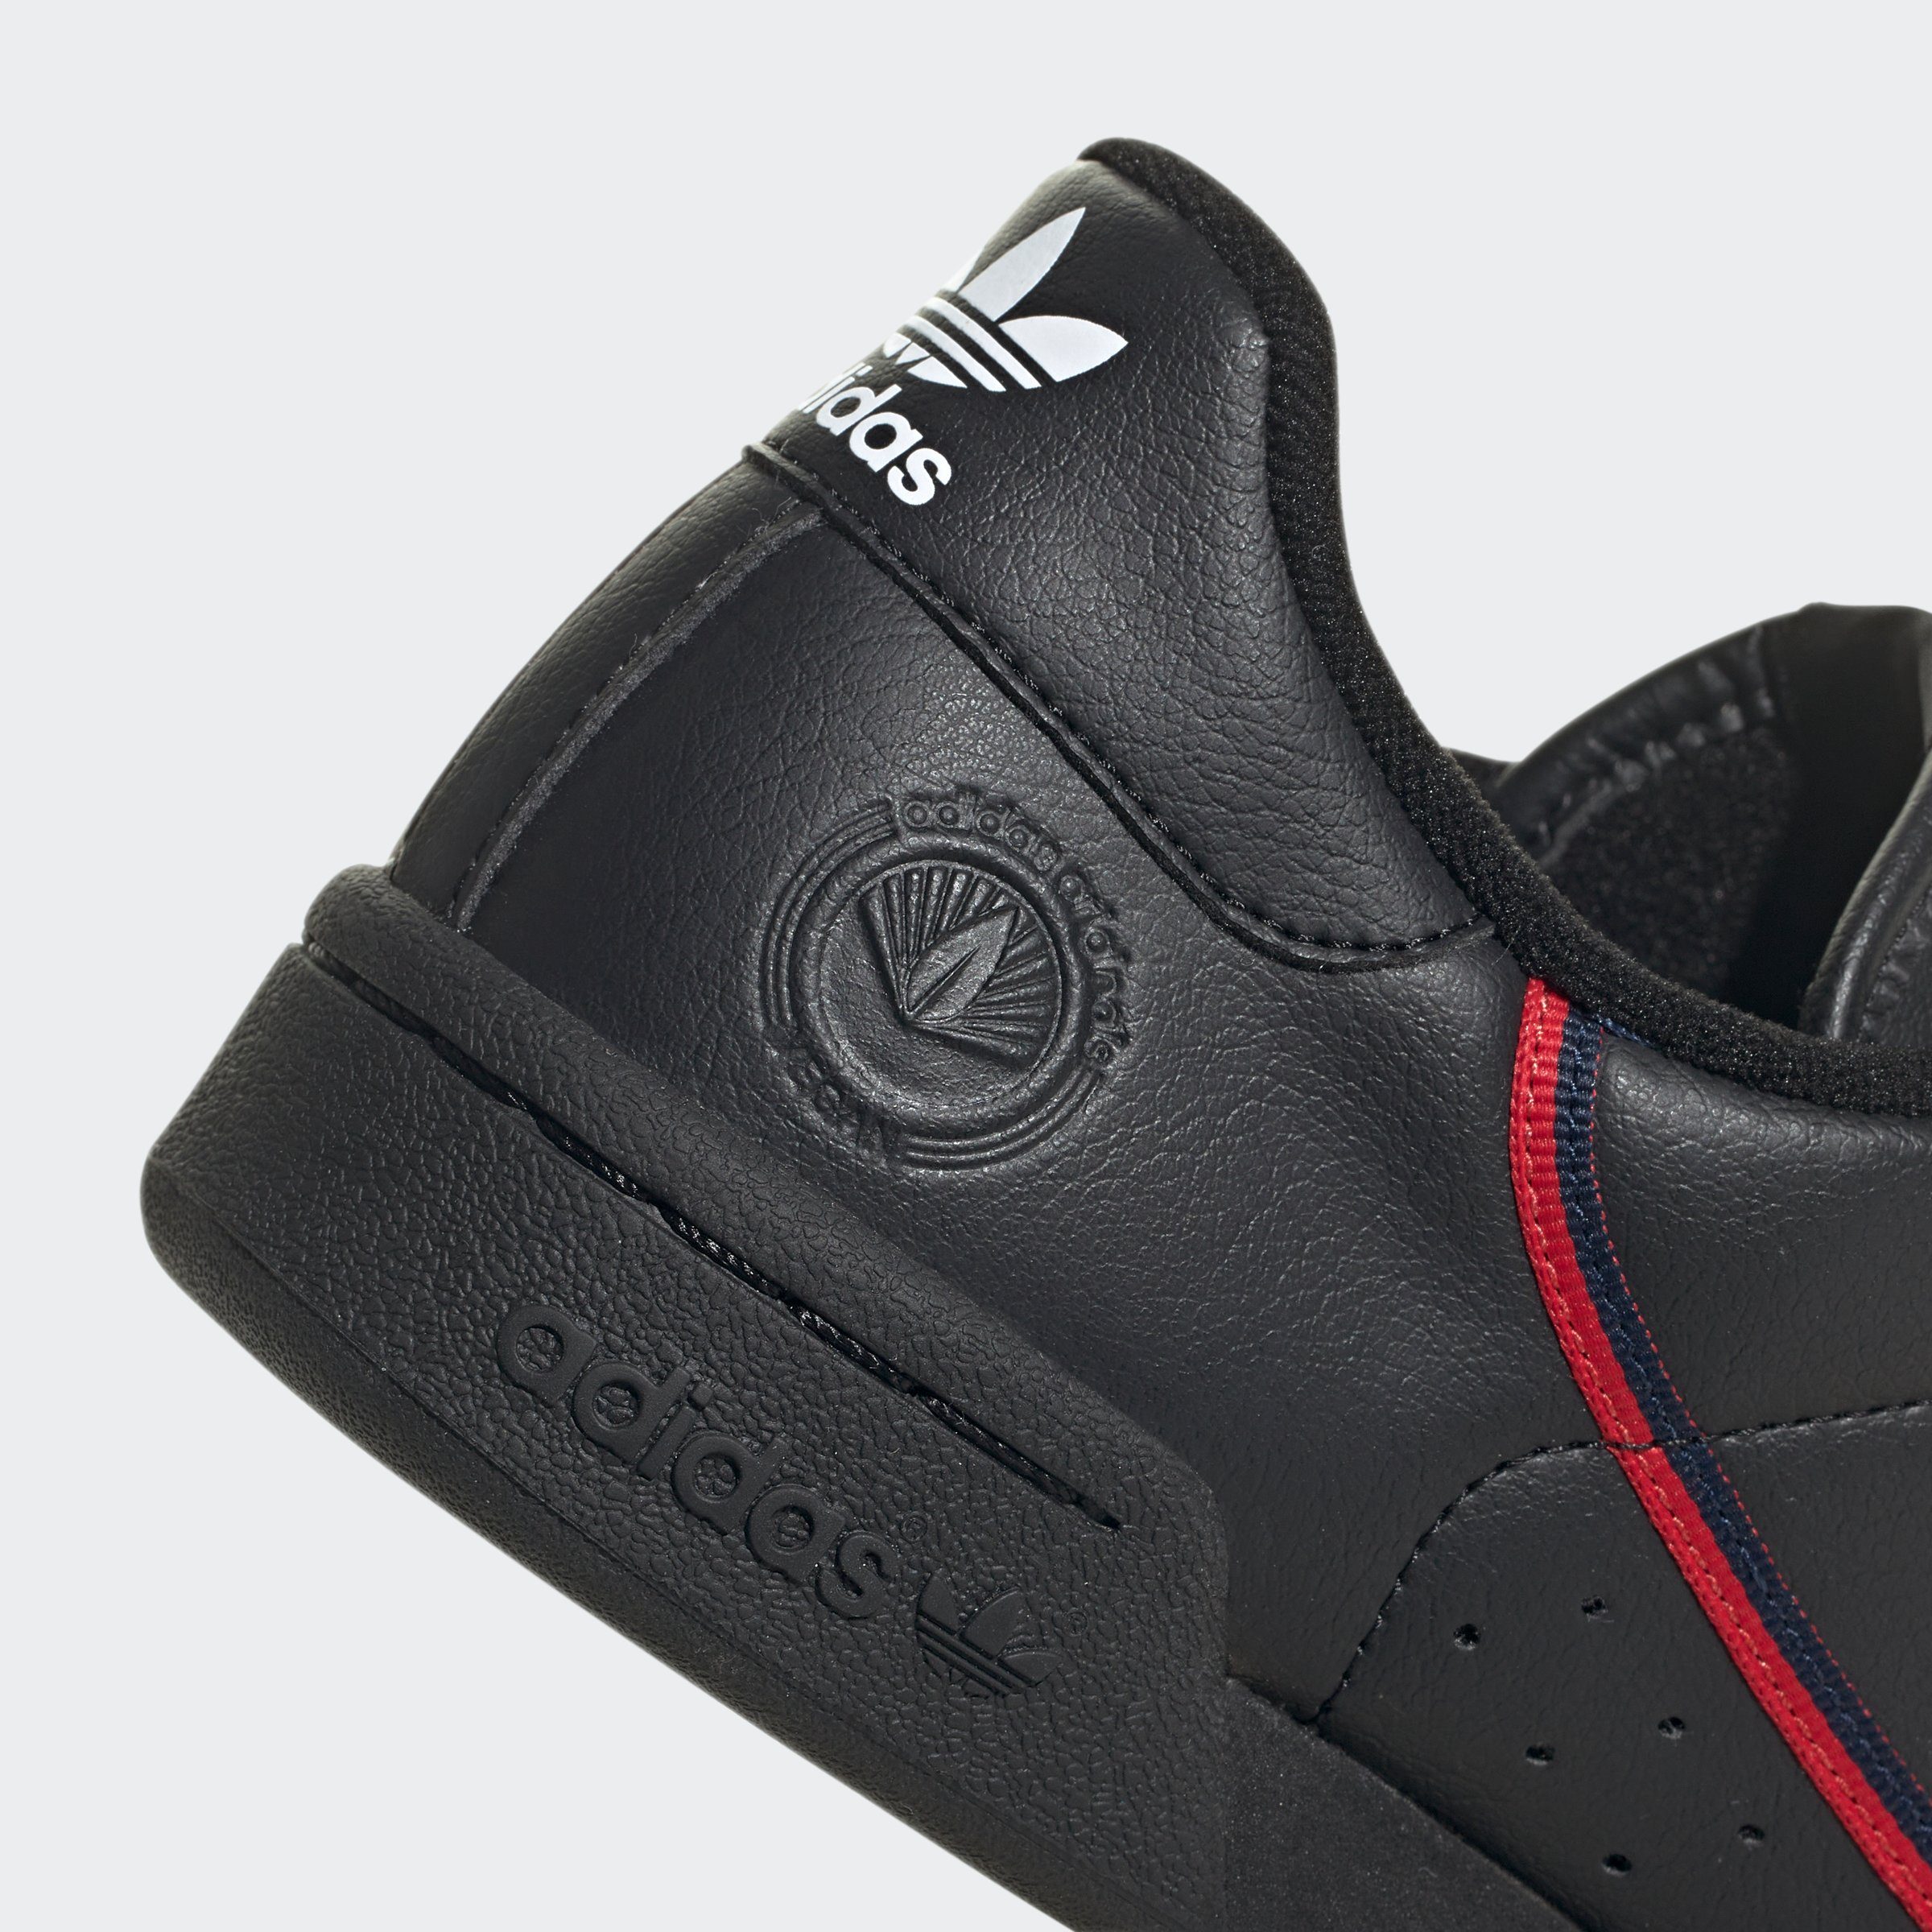 VEGAN CBLACK-CONAVY-SCARLE CONTINENTAL adidas Originals 80 Sneaker